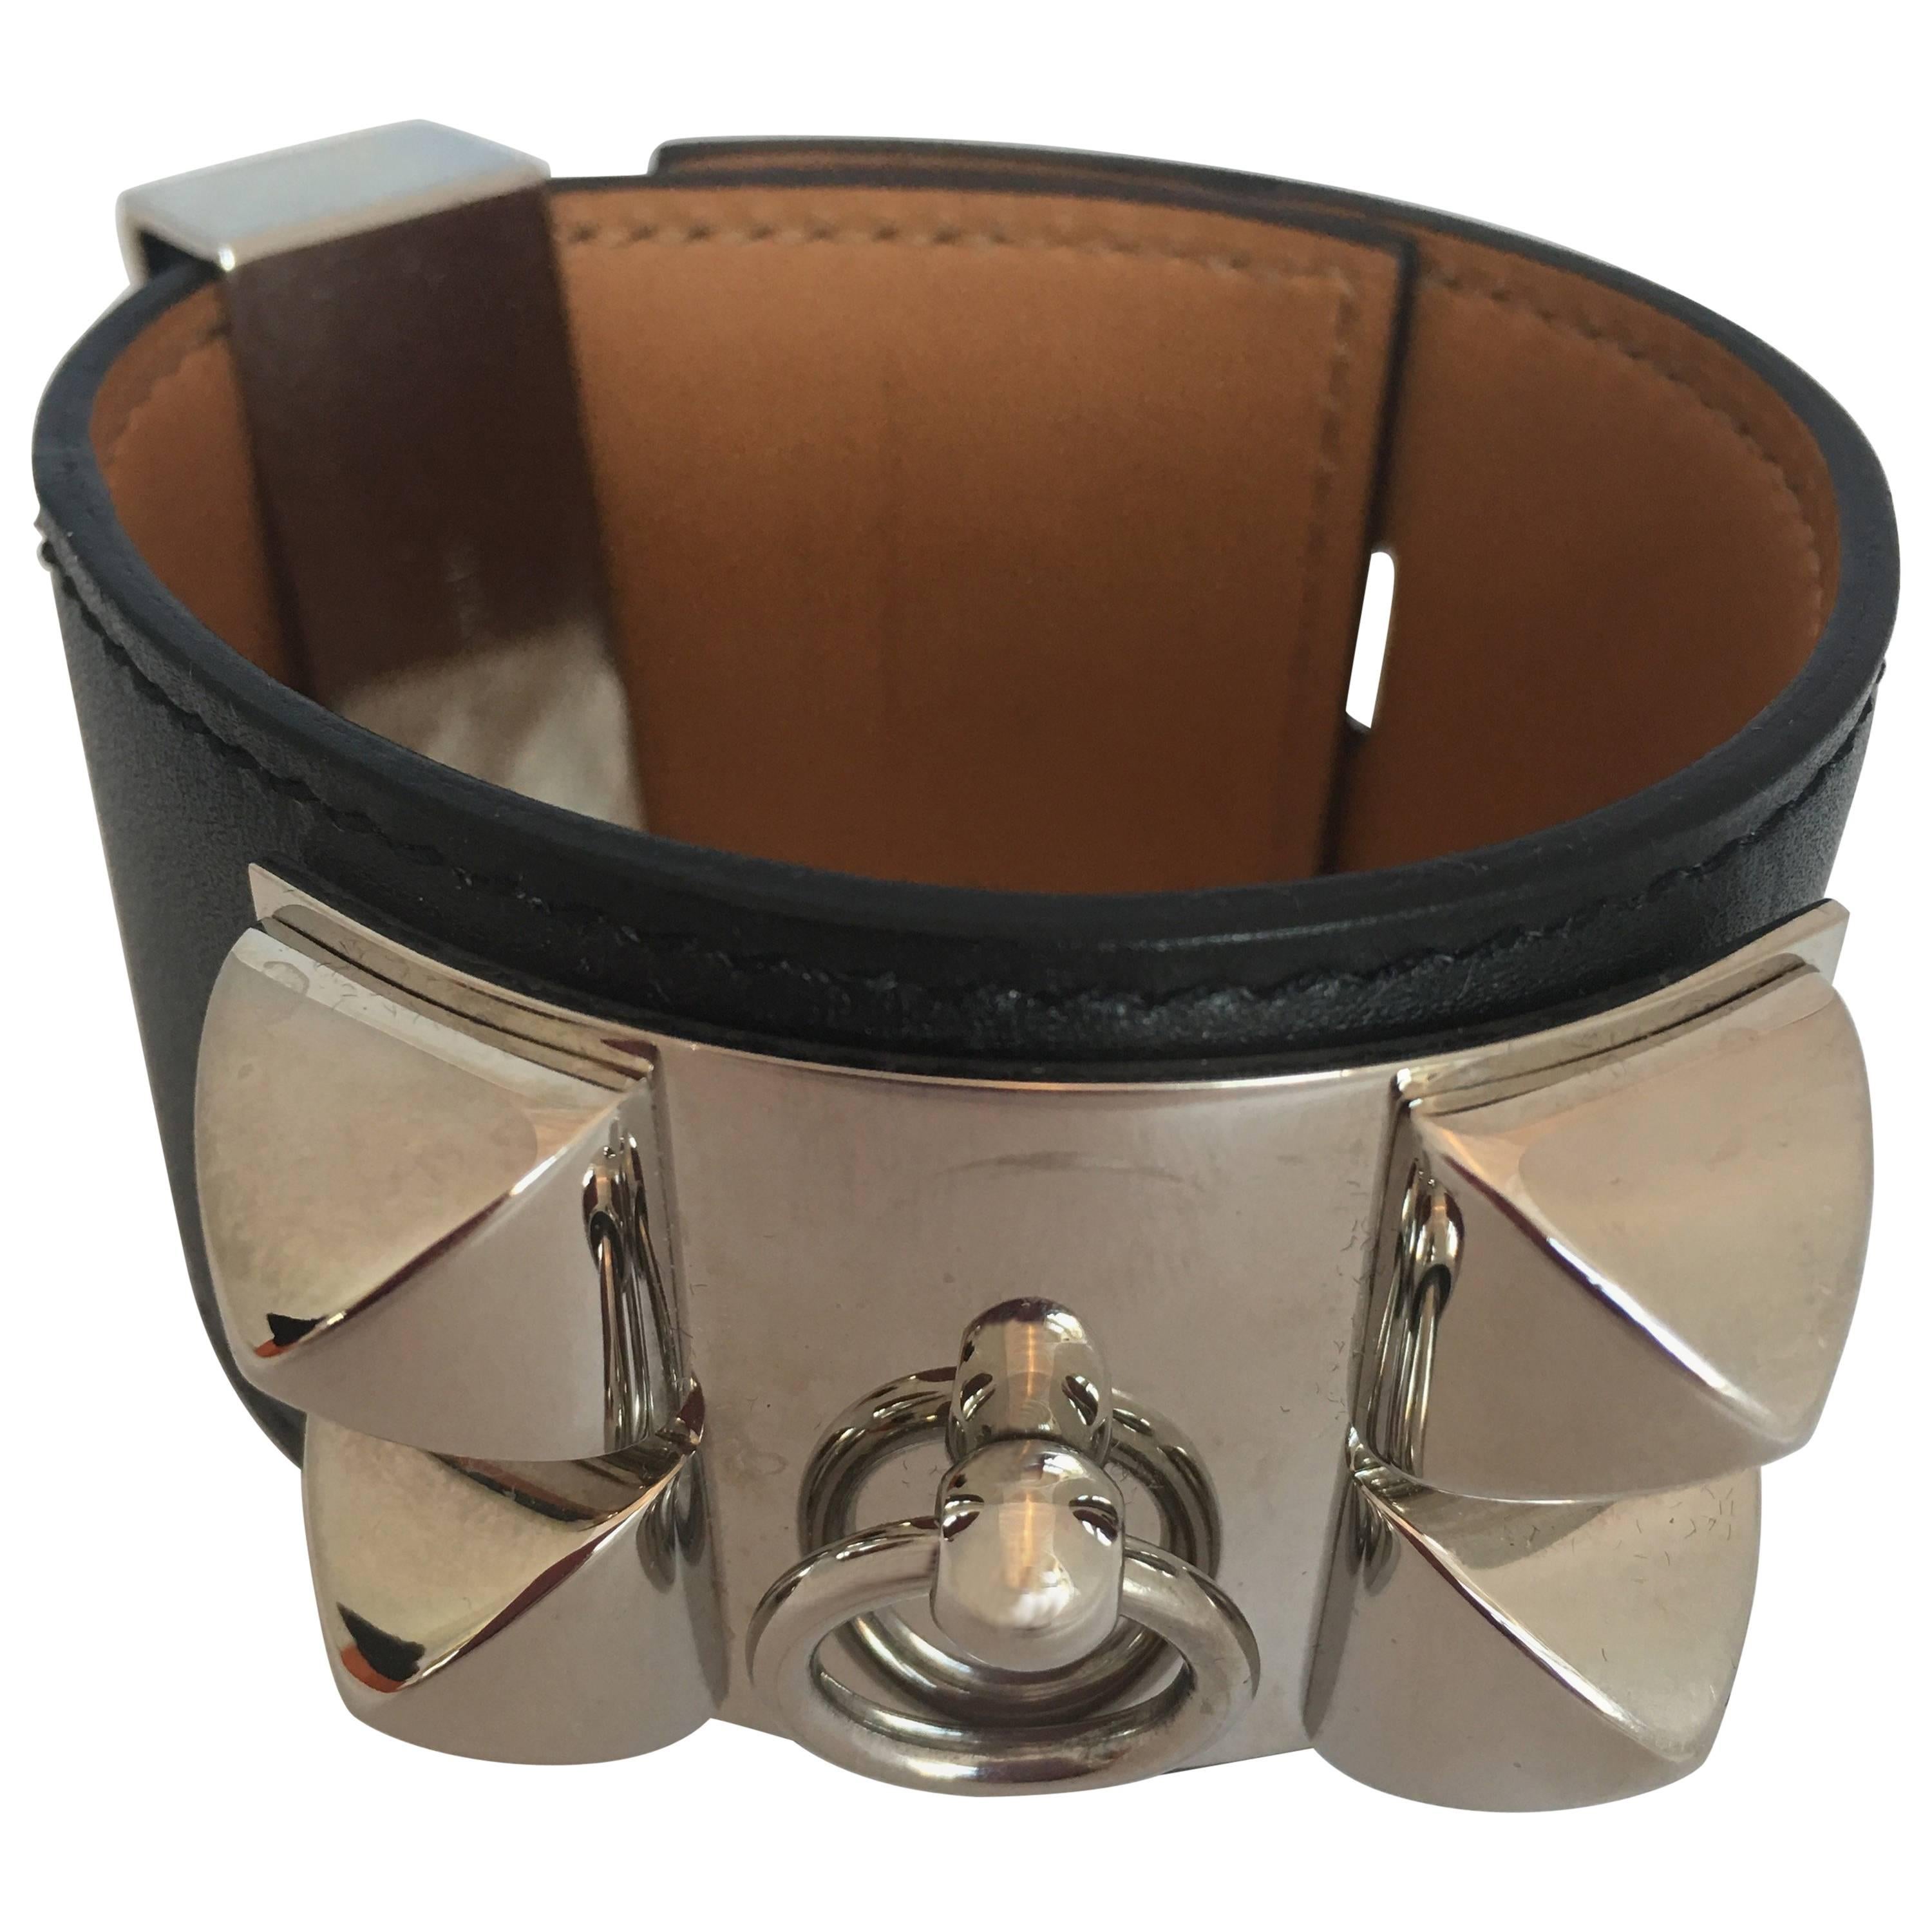 Hermes Cuir Collier de Chien Black & Silver Leather Cuff Bracelet